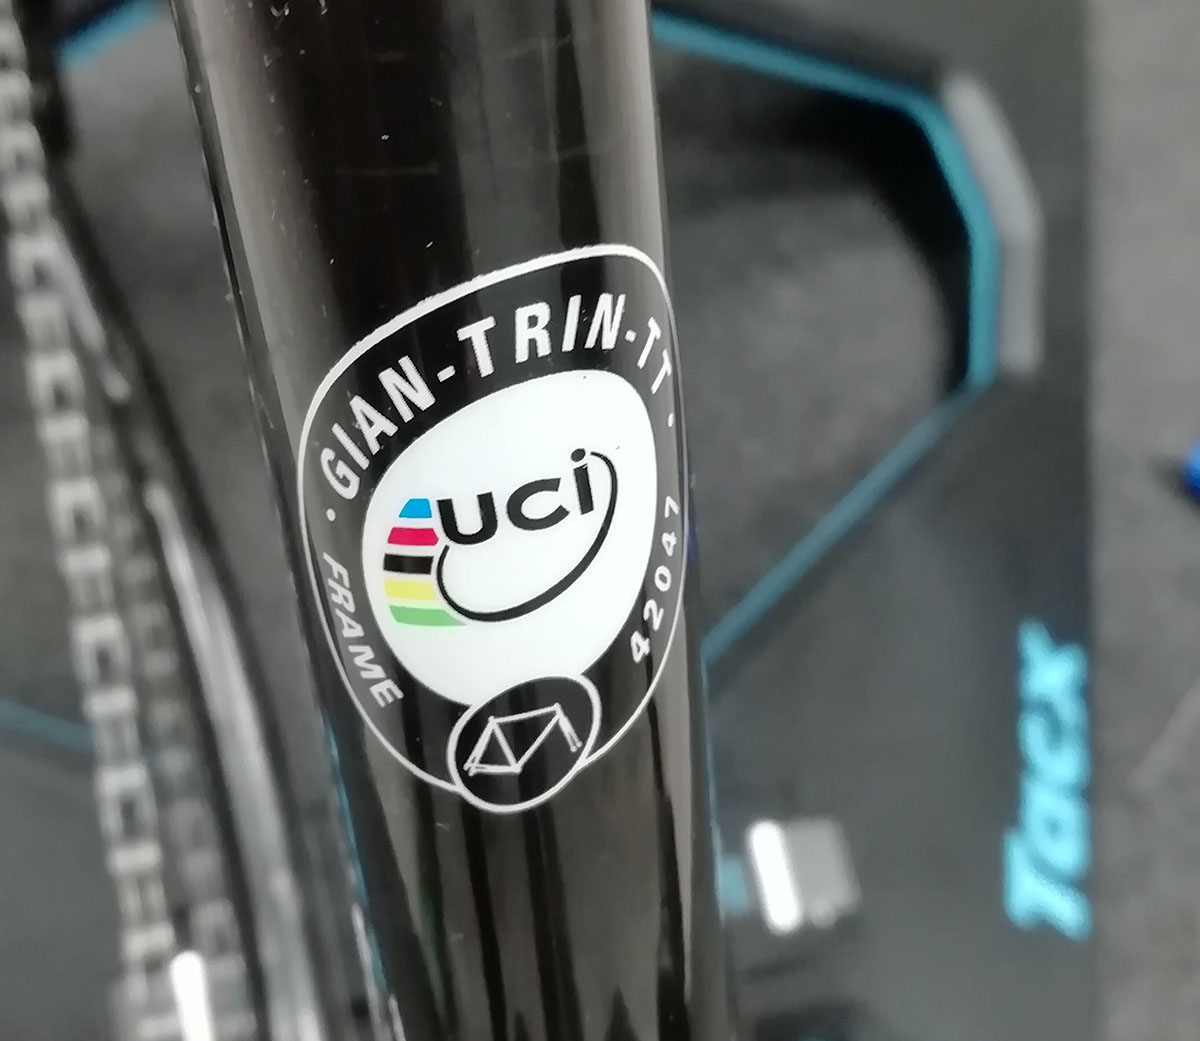 Il marchio UCI che identifica il tipo di bicicletta secondo il regolamento